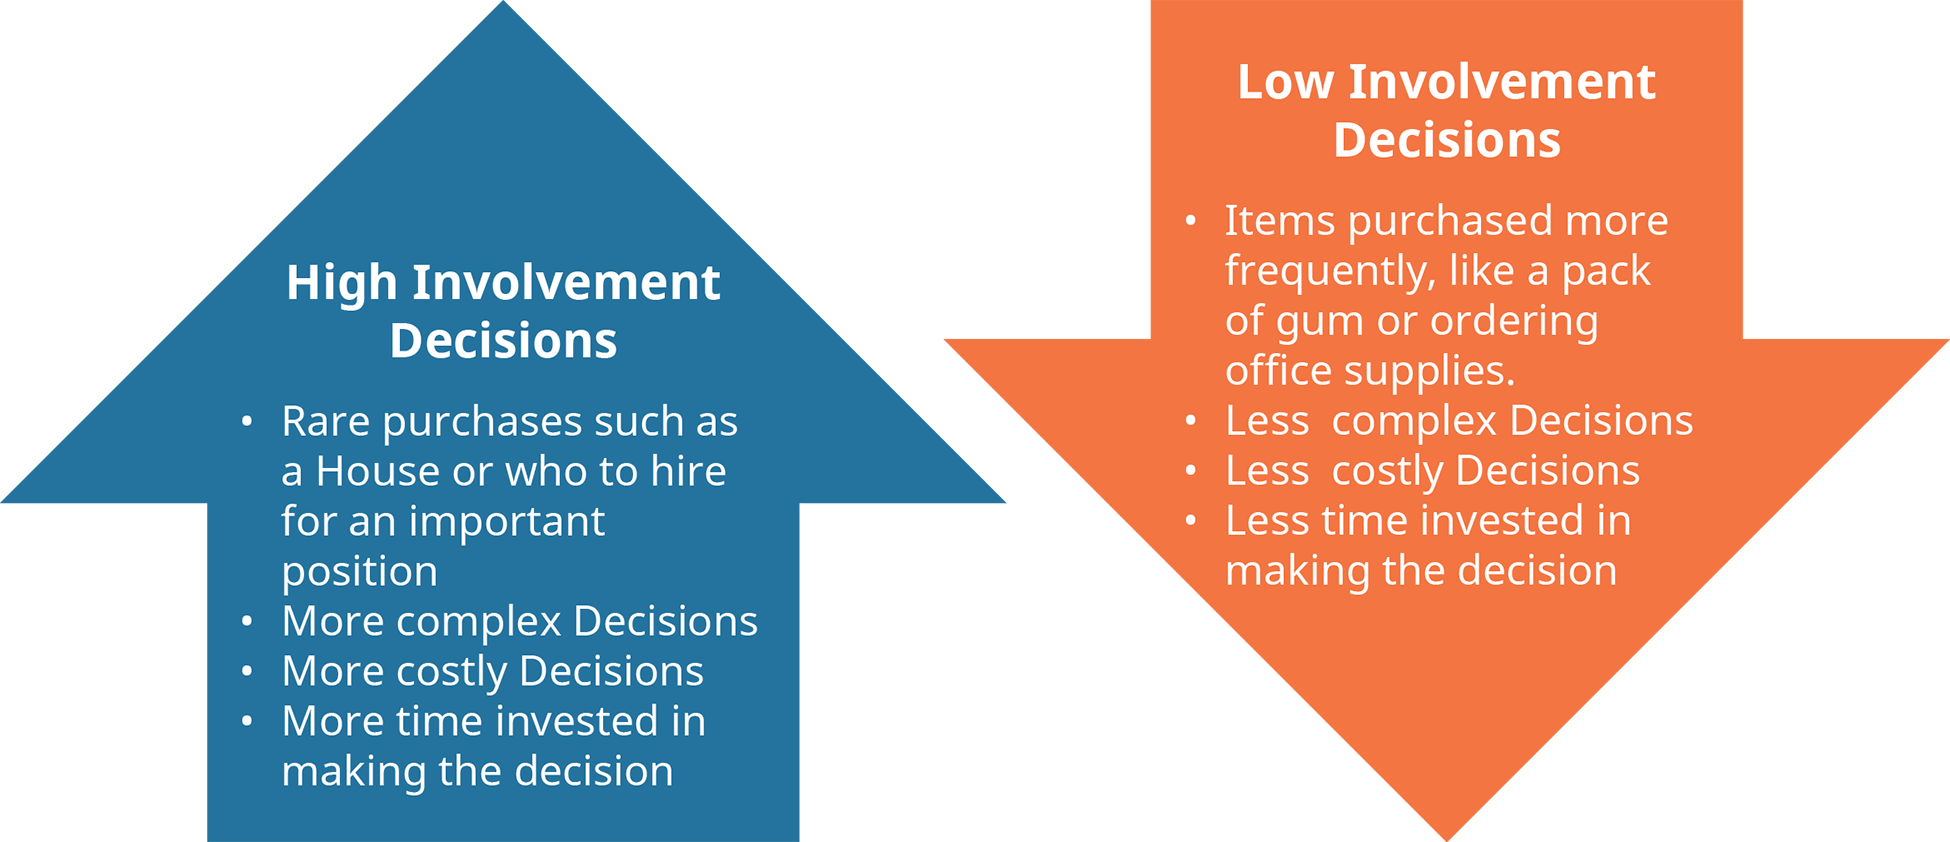 Un diagramme illustre les différentes caractéristiques des décisions impliquant une forte implication et une faible implication.